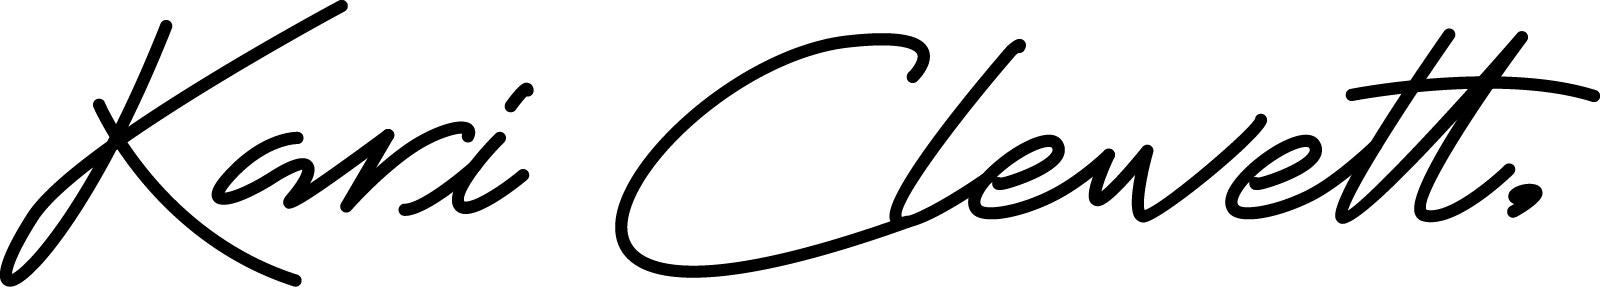 Kari clewett Logo